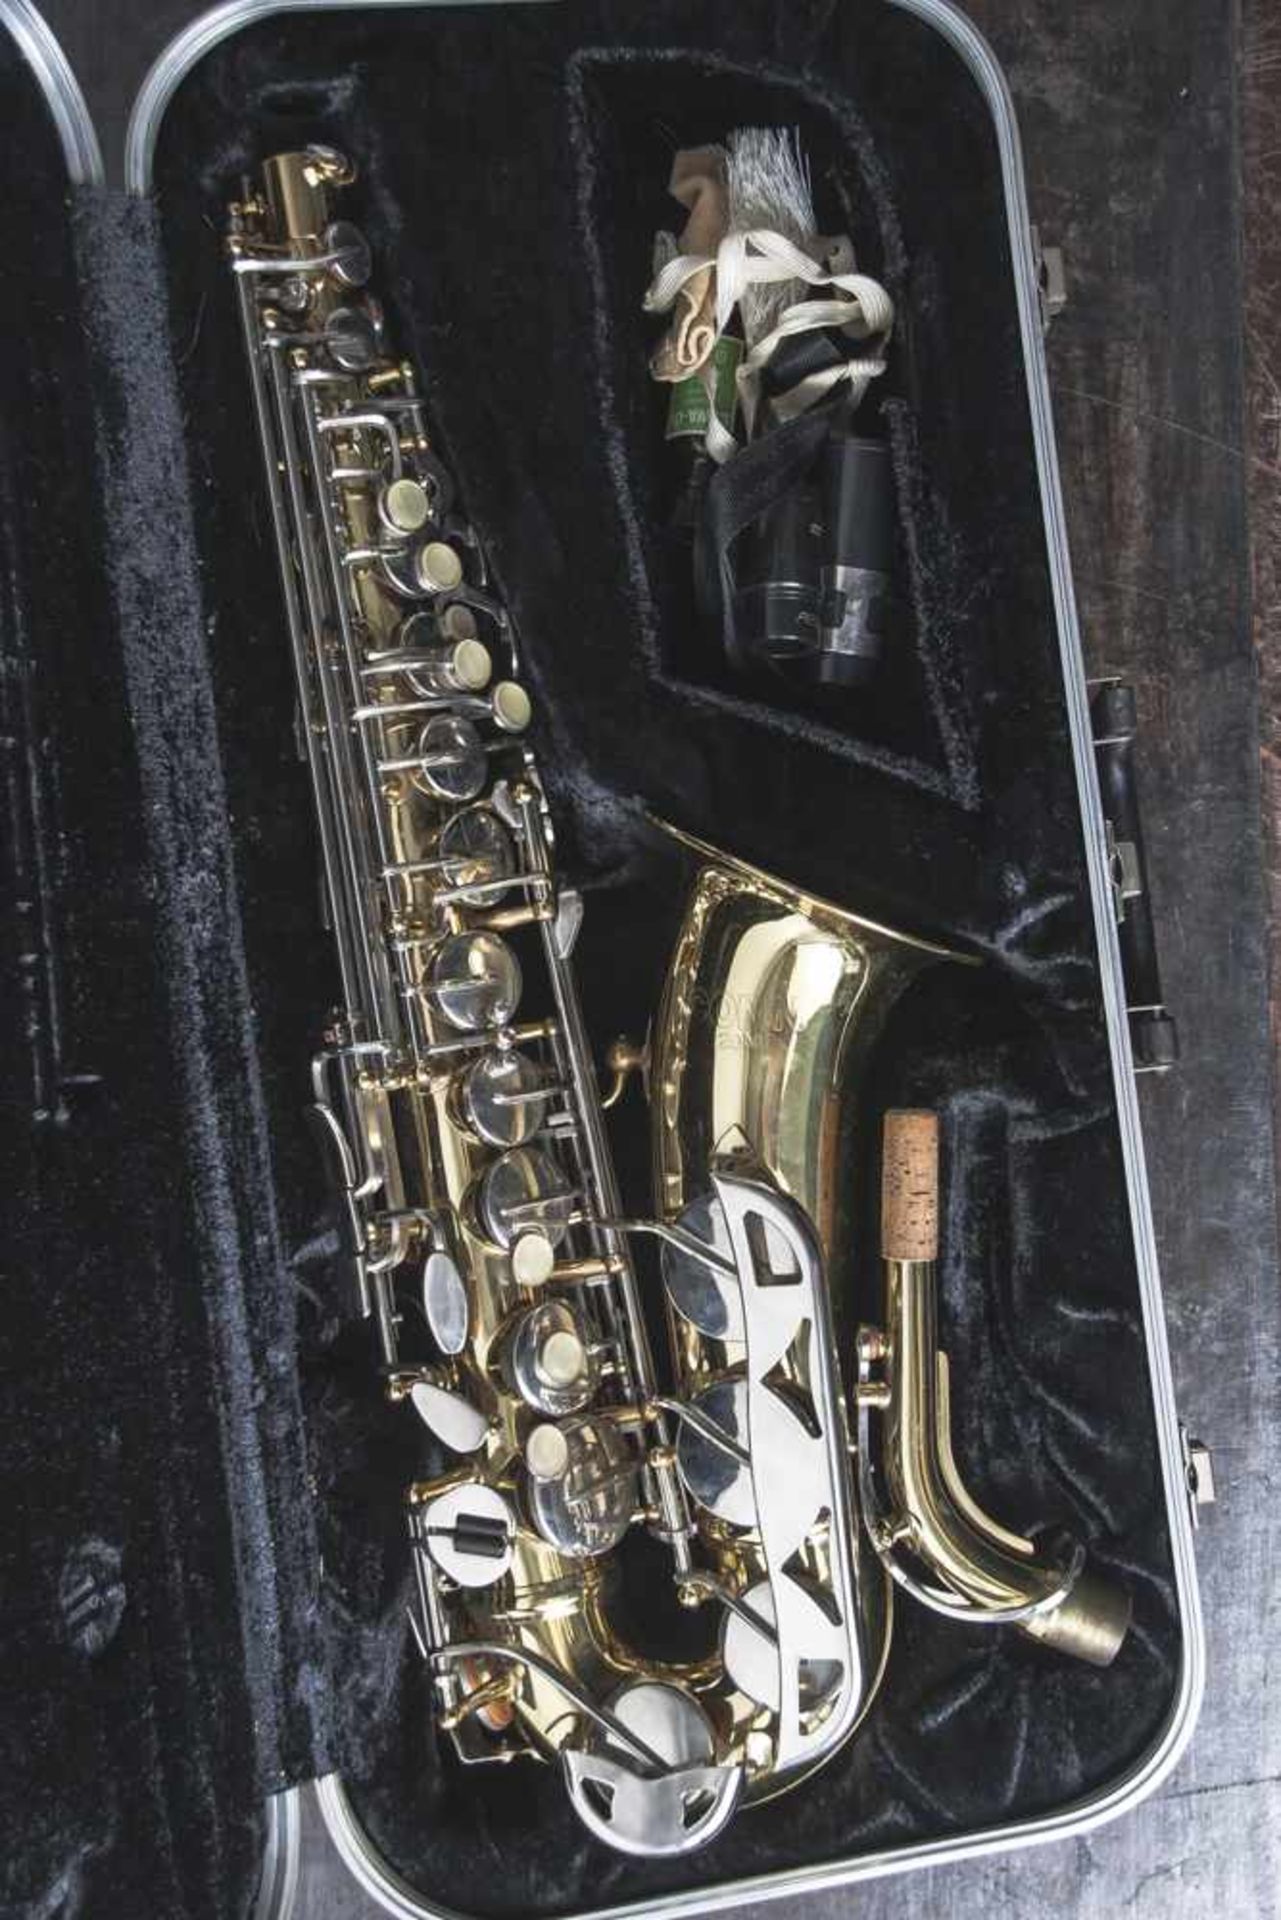 Saxophon, Conn 20 M, Eb Sopranino, Baujahr 1988, Seriennr. 3817184, Messingkorpus mit verchromten